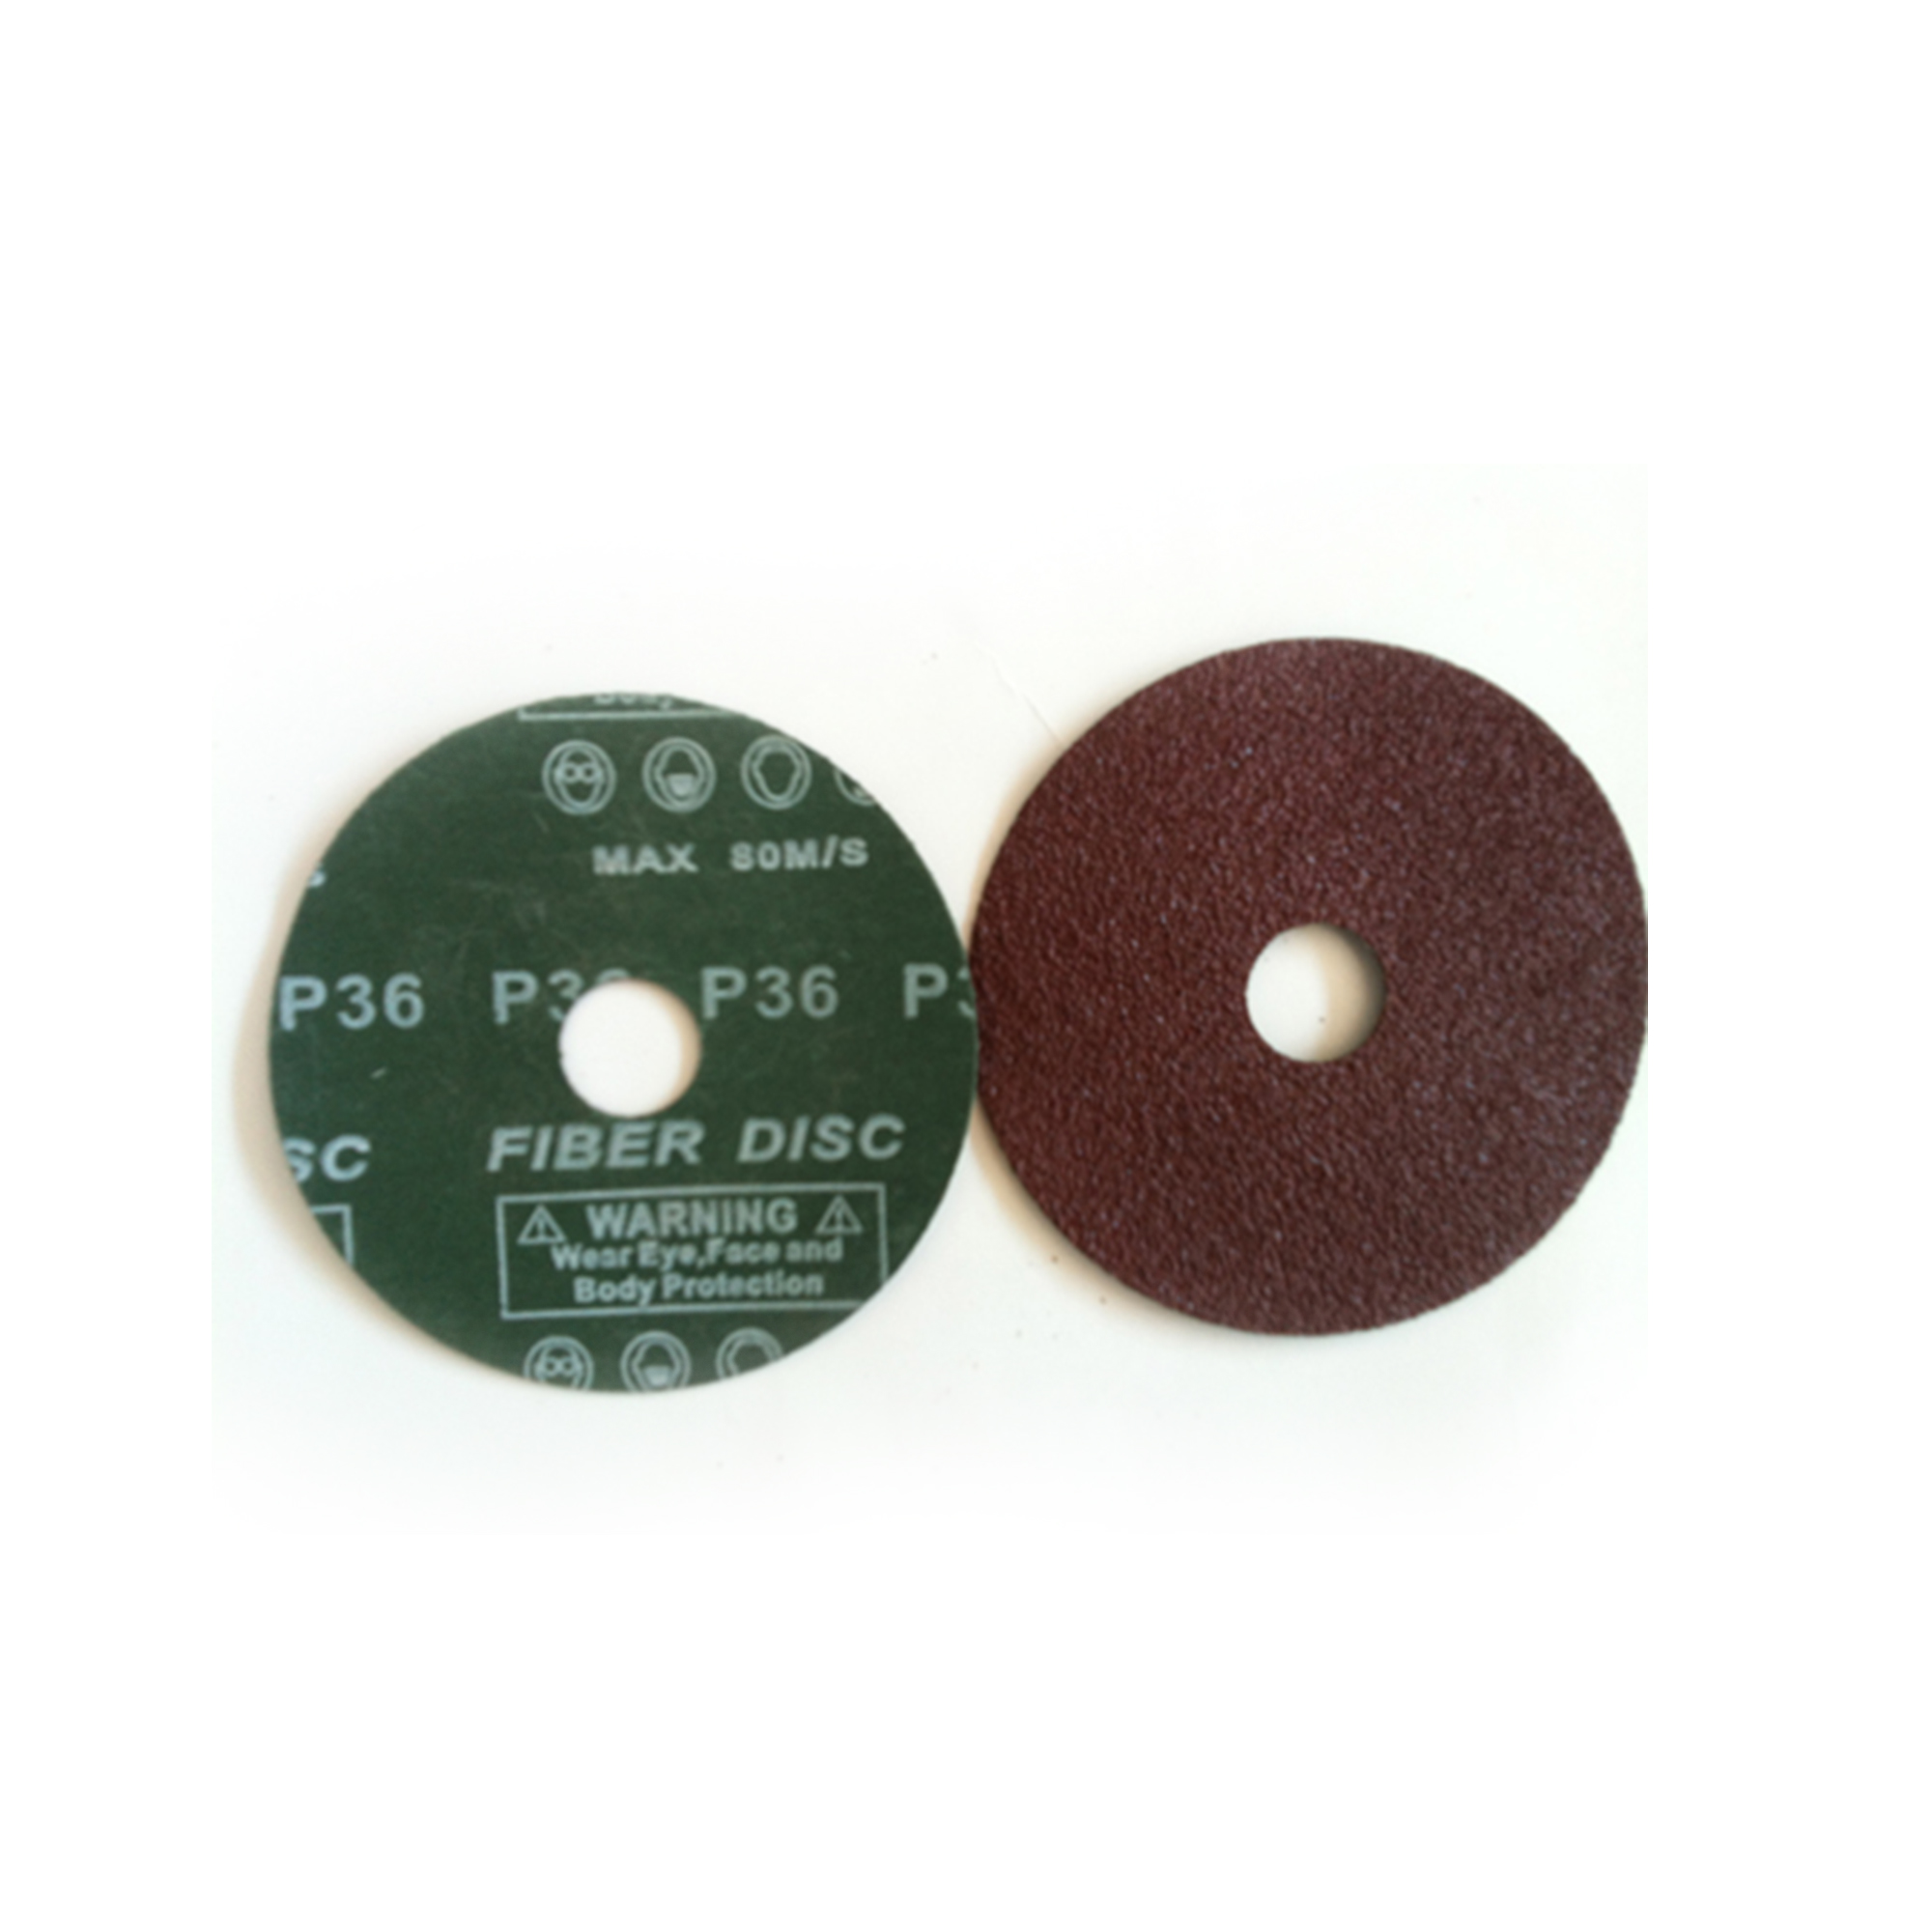  Aluminum Oxide Fiber Disc